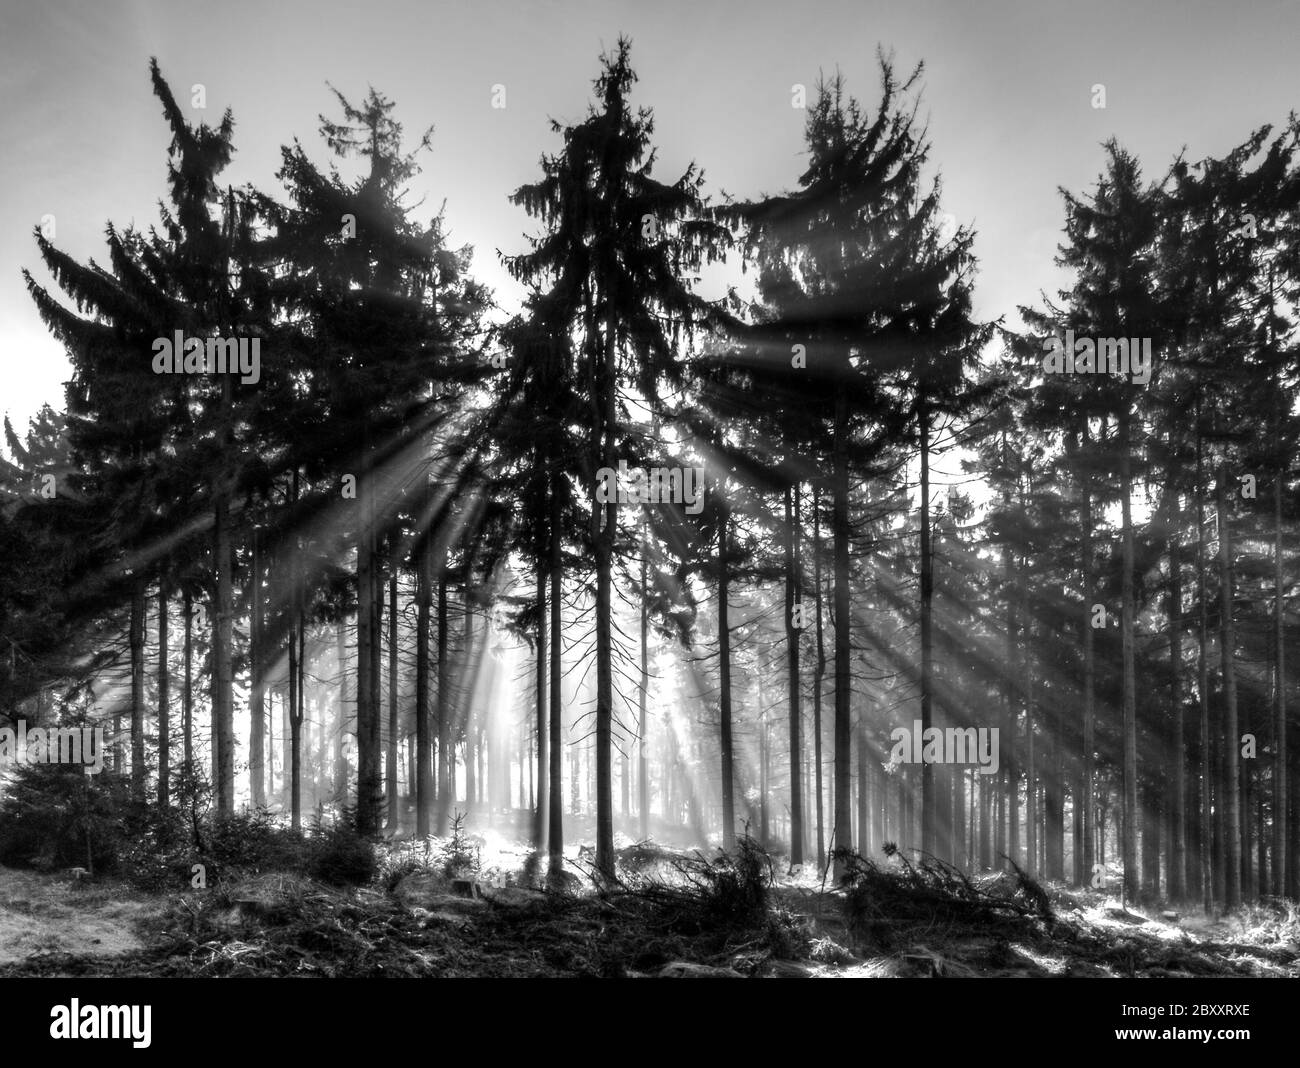 Raggi di sole luminosi che brillano attraverso la foresta di abete rosso. Immagine in bianco e nero. Foto Stock